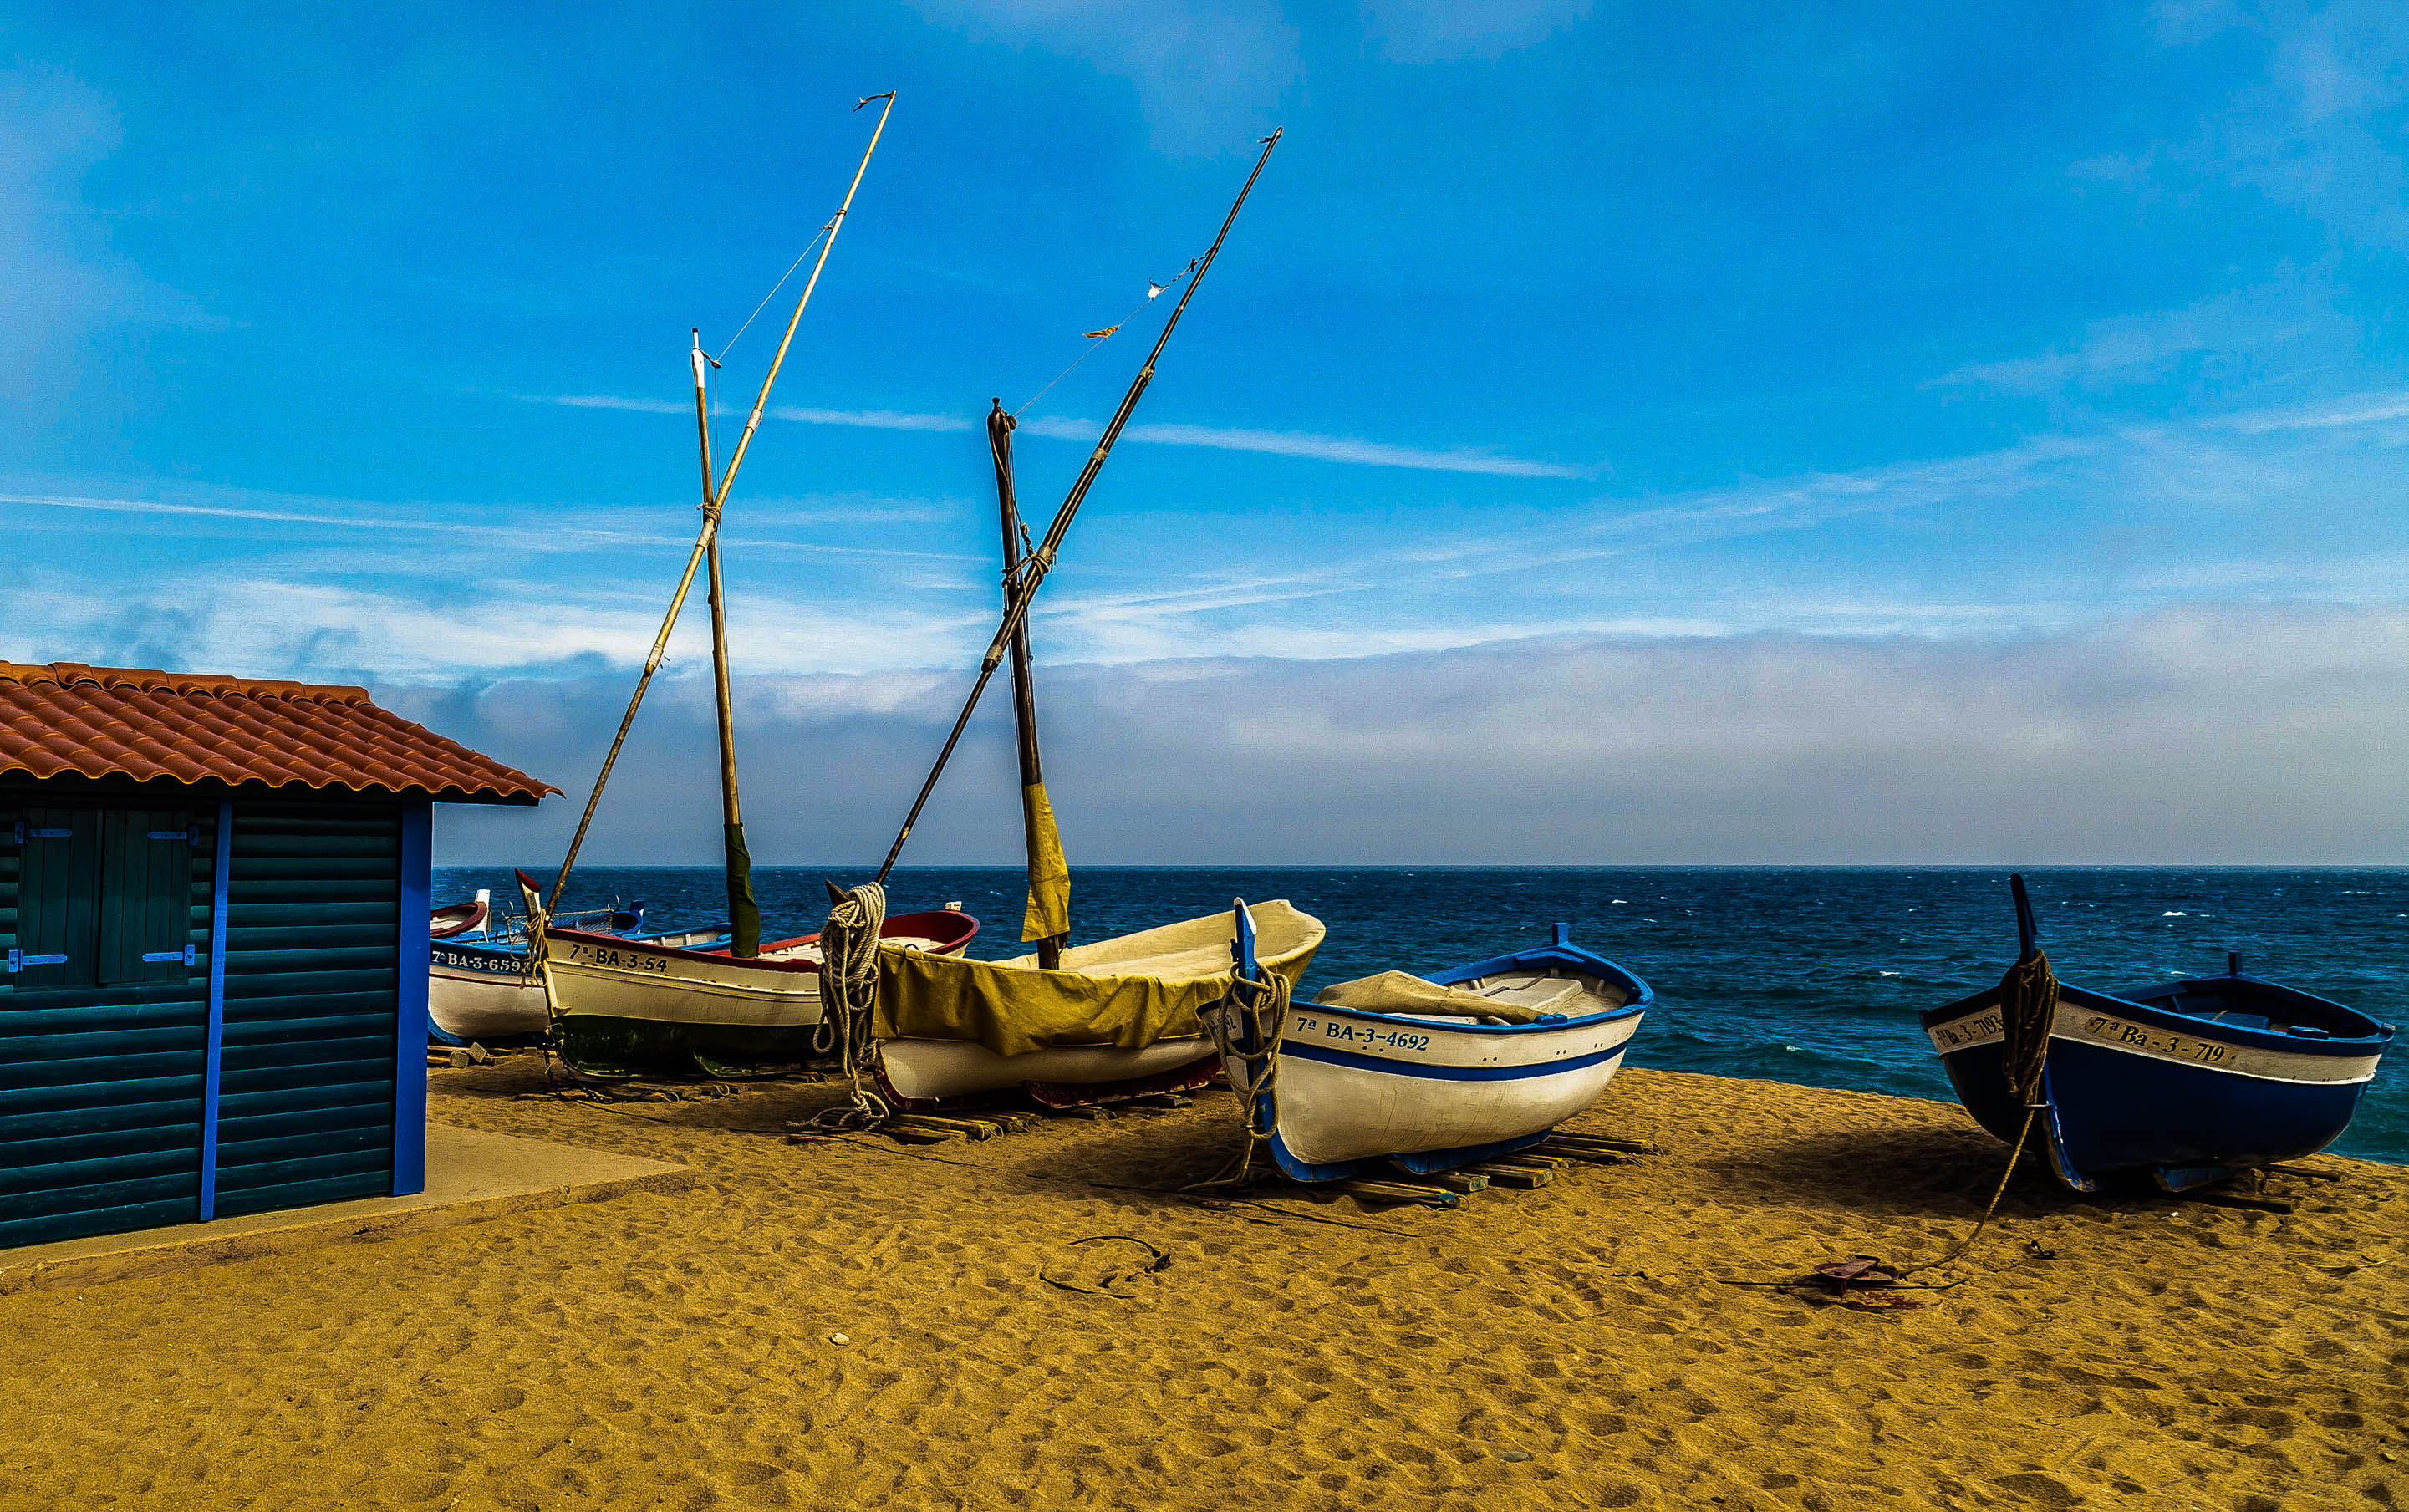 Spiagge e barche di pescatori in Costa Maresme